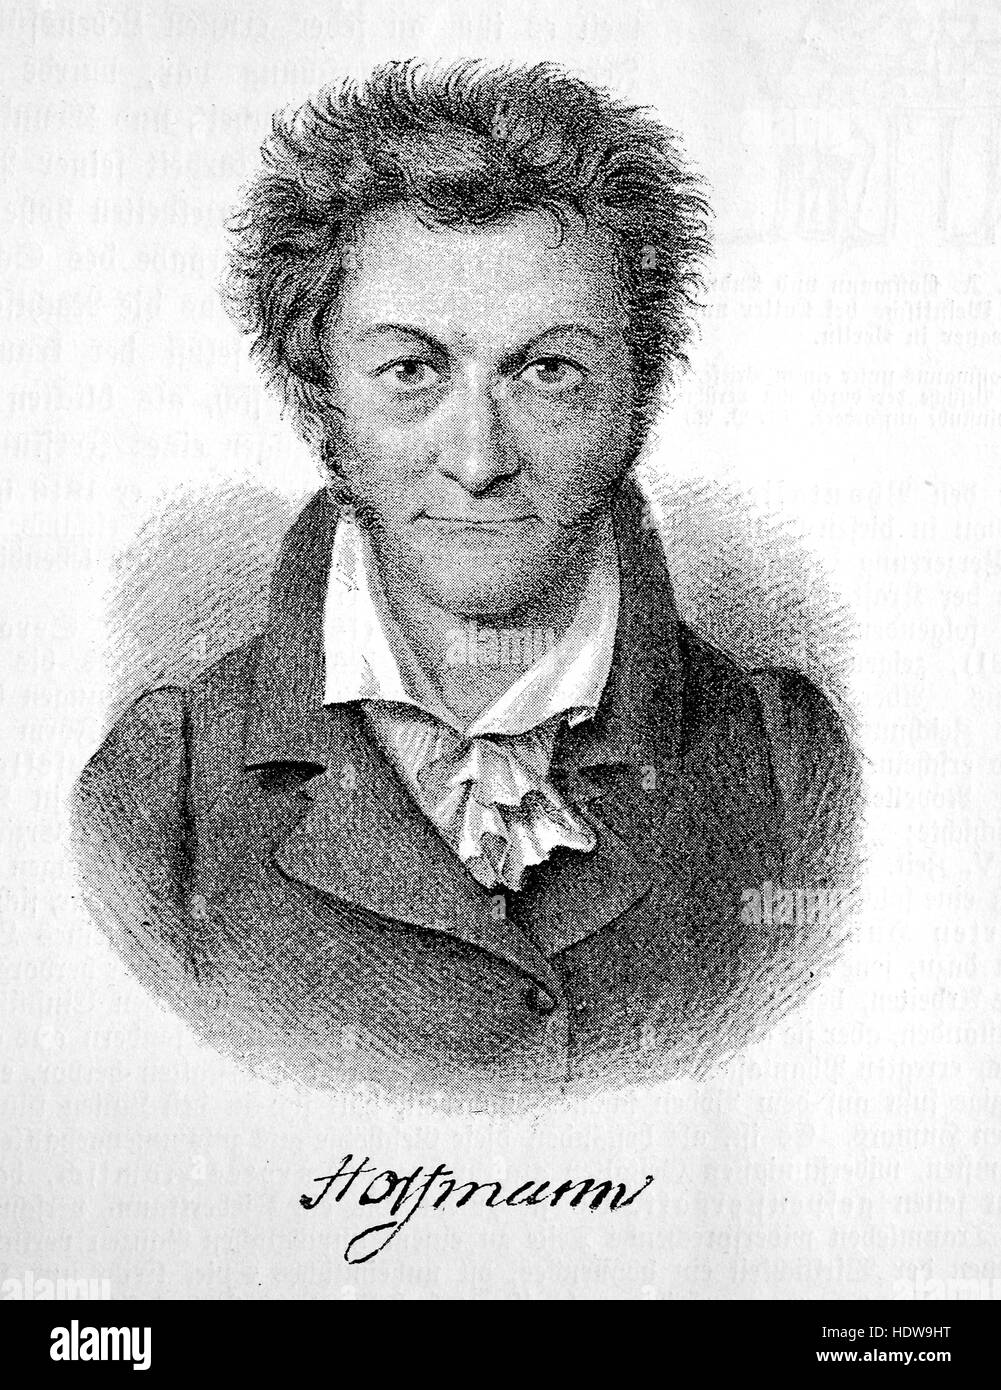 Ernst Theodor Amadeus Hoffmann, E. T. A. Hoffmann, nato Ernst Theodor Wilhelm Hoffmann, 1776-1822, romantica prussiano autore di fantasy e horror, un giurista, compositore, critico musicale, disegnatore e caricaturista, xilografia a partire dall'anno 1880 Foto Stock